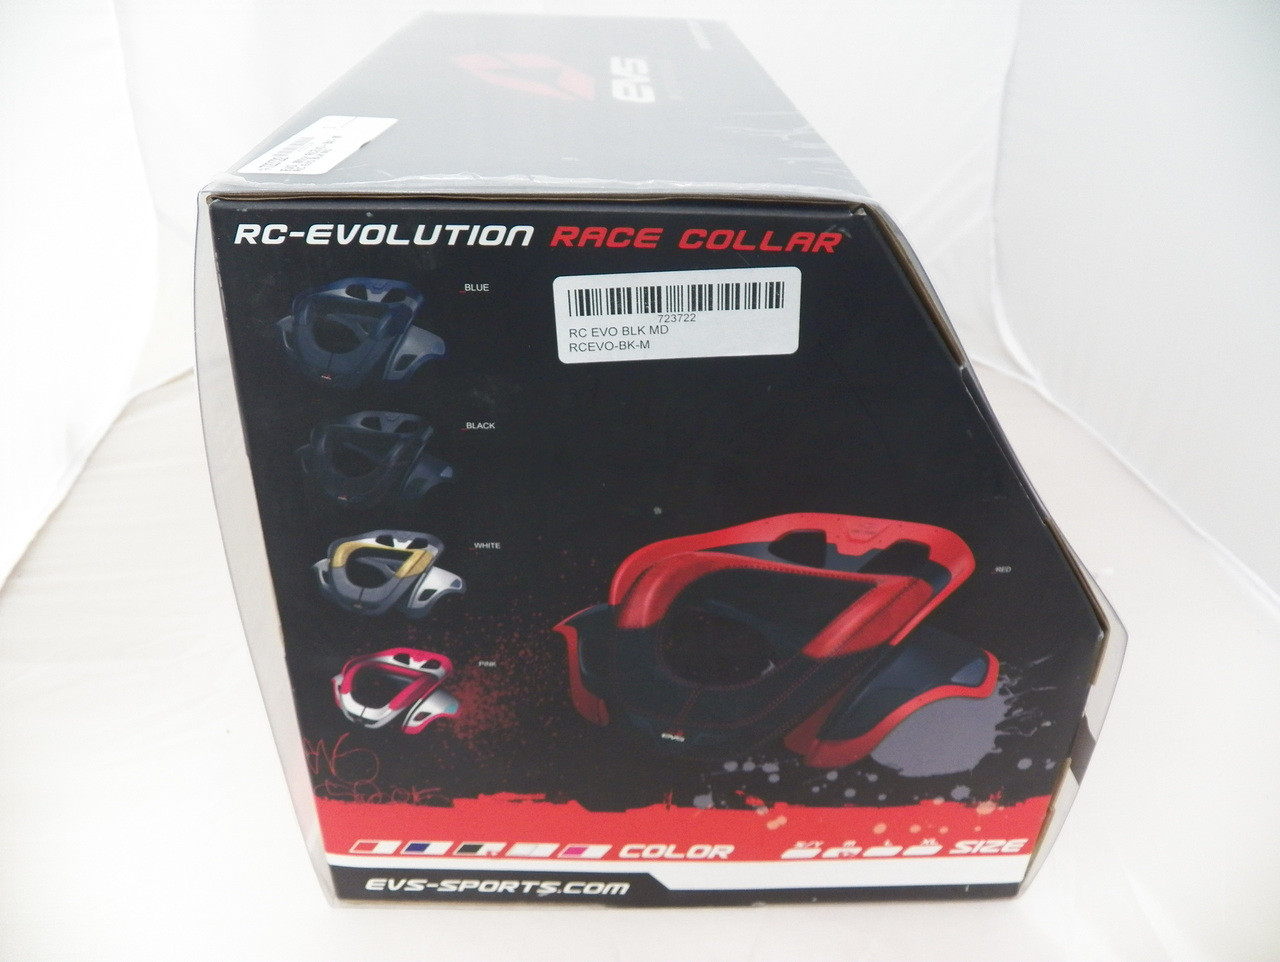 RC-Evolution Race Collar #723722 Black medium..NIB